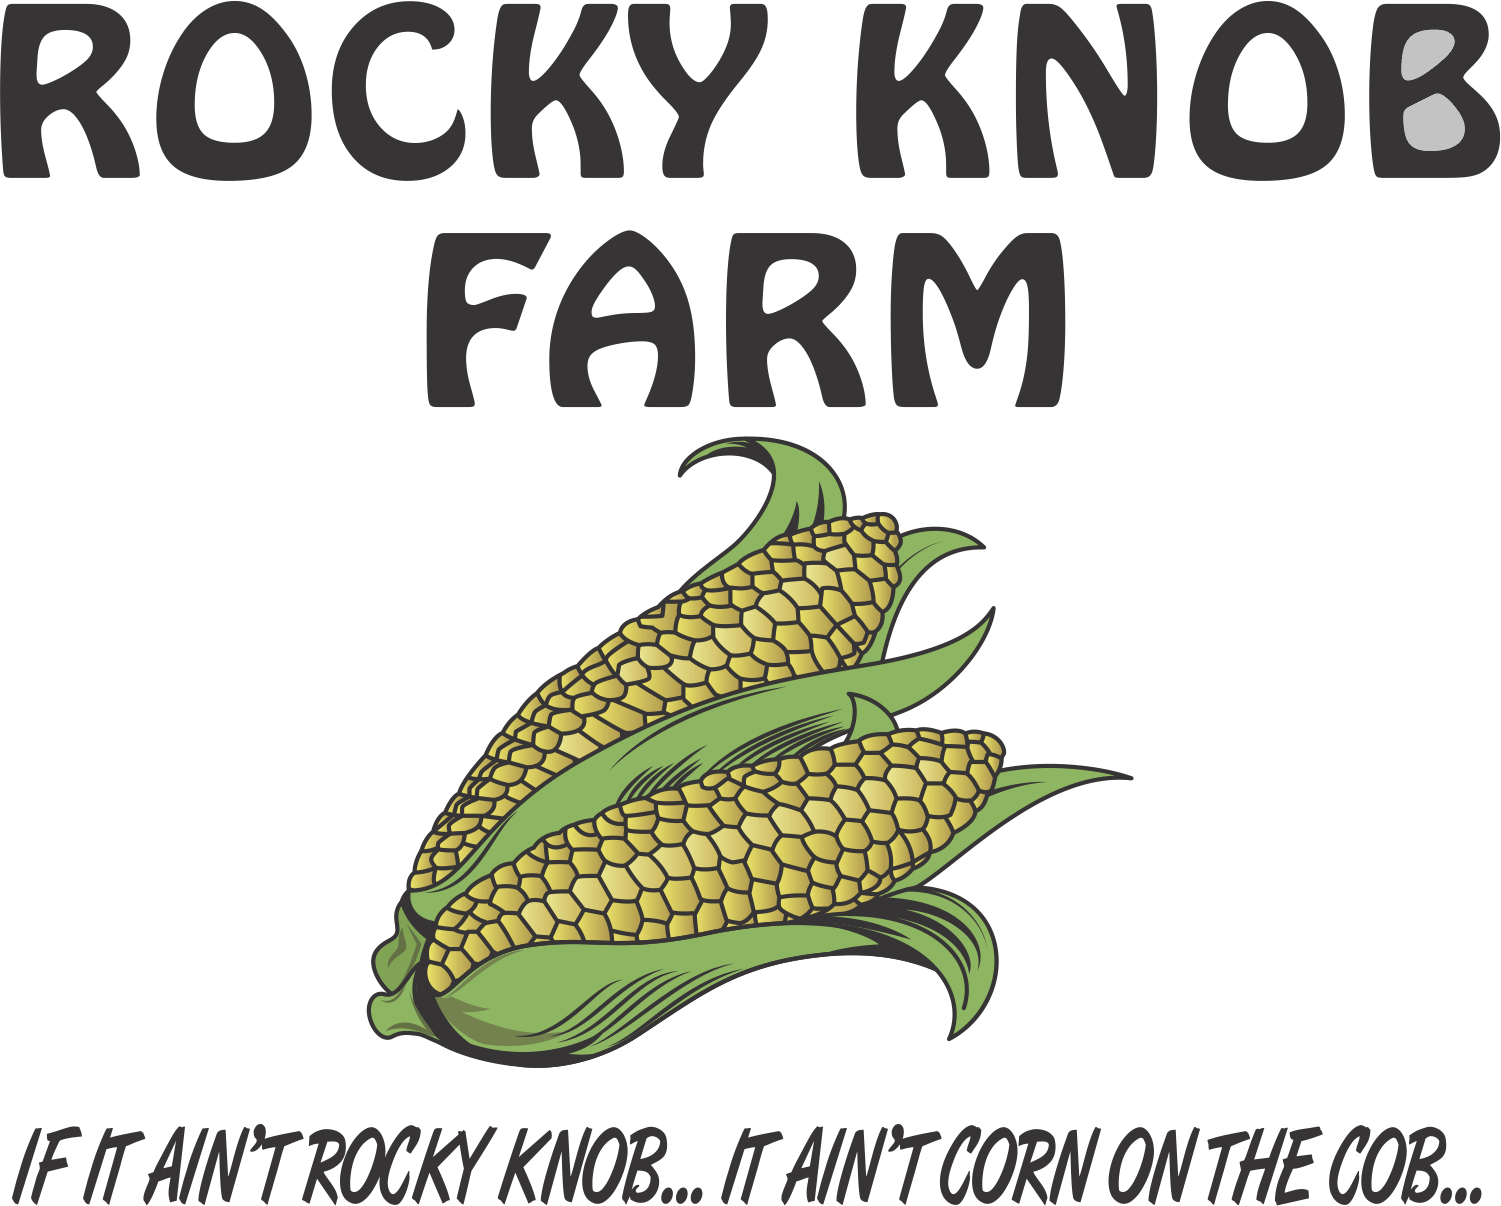 Rocky Knob Farm